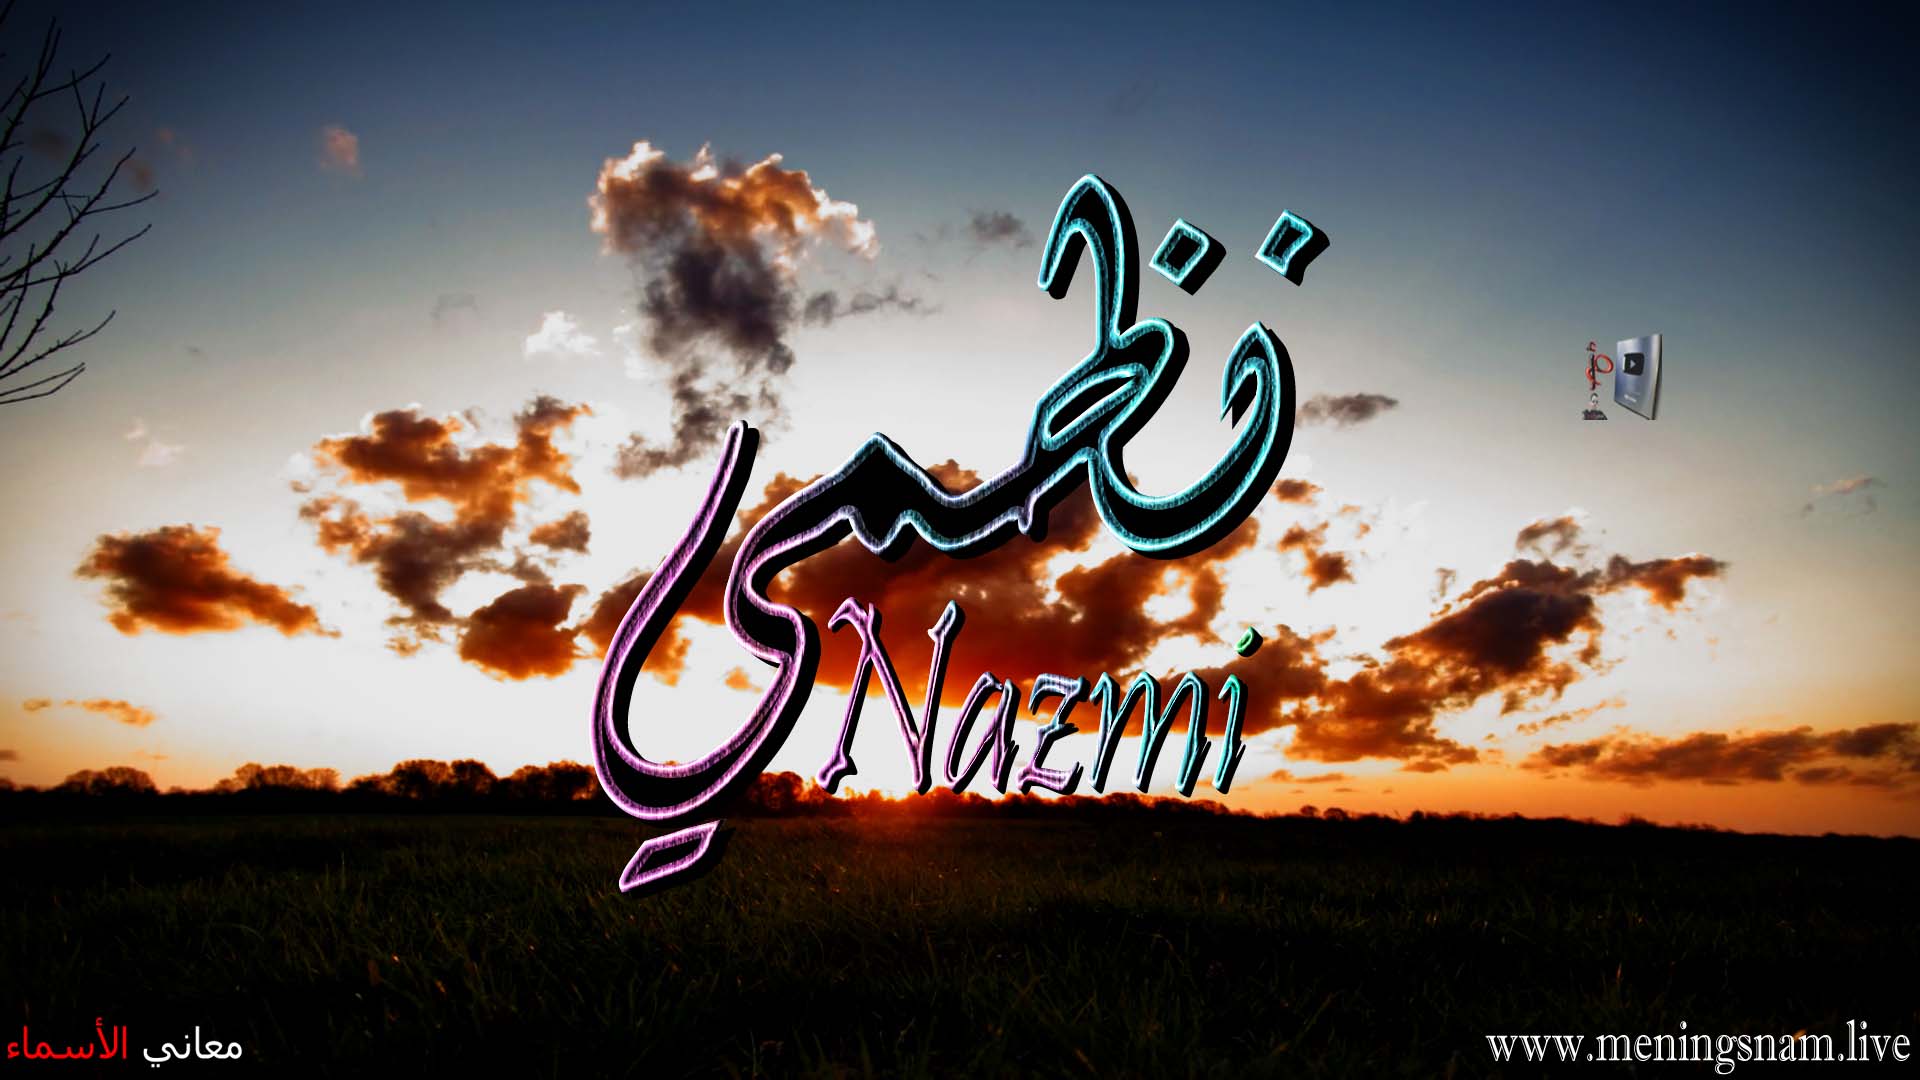 معنى اسم, نظمي, وصفات, حامل, هذا الاسم, Nazmi,